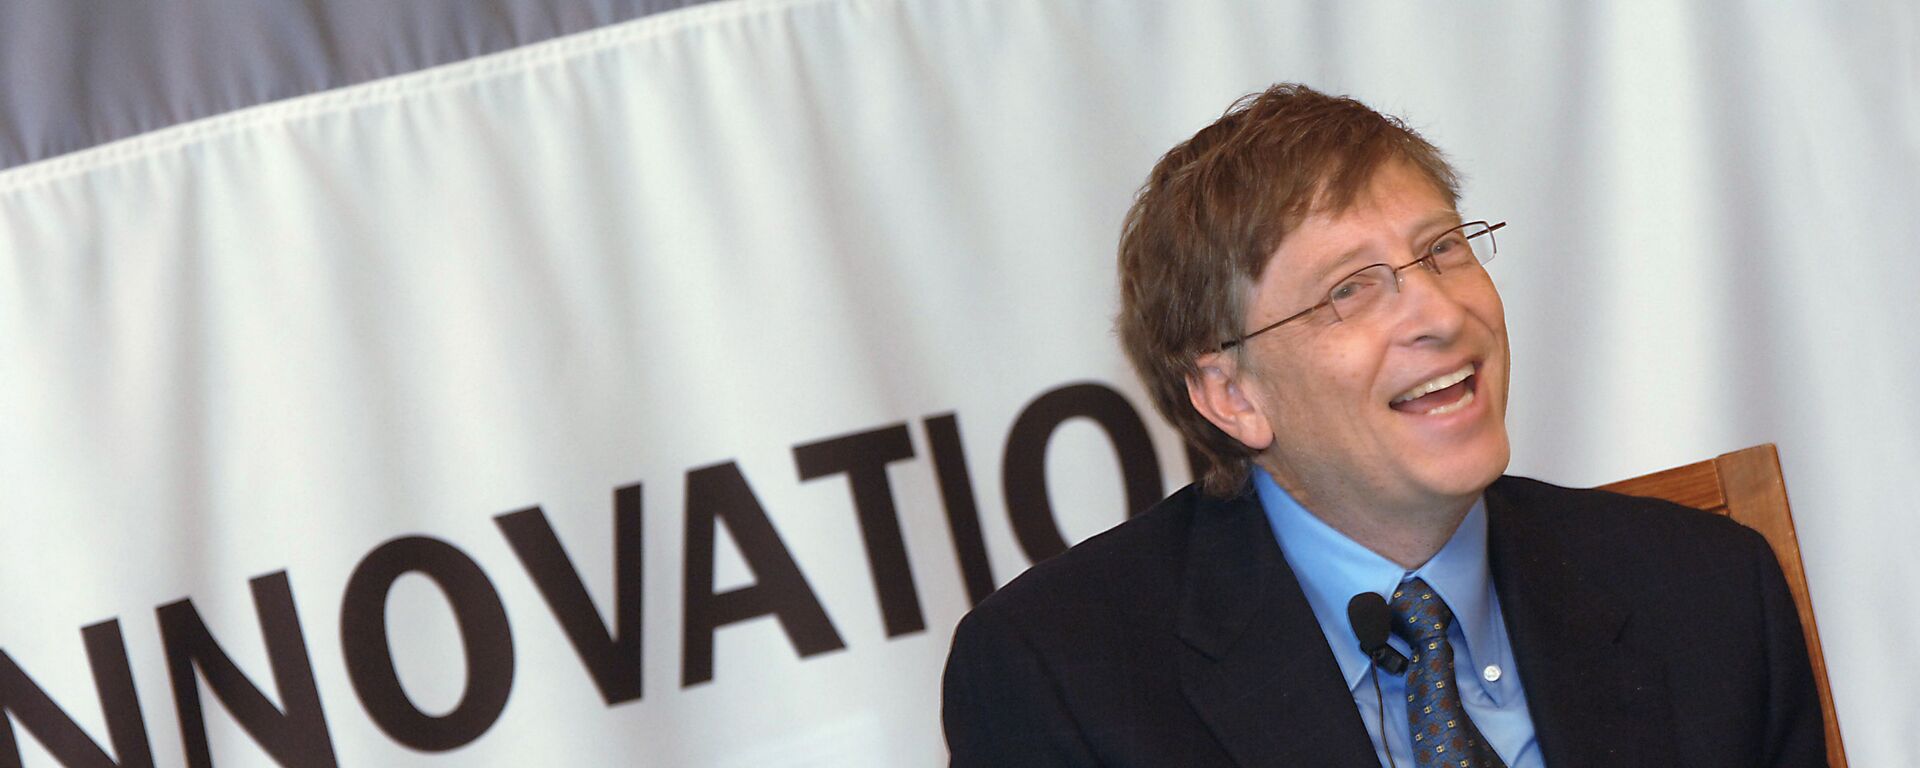 Председатель правления корпорации Microsoft Билл Гейтс в гостинице Националь. - Sputnik Армения, 1920, 19.01.2022